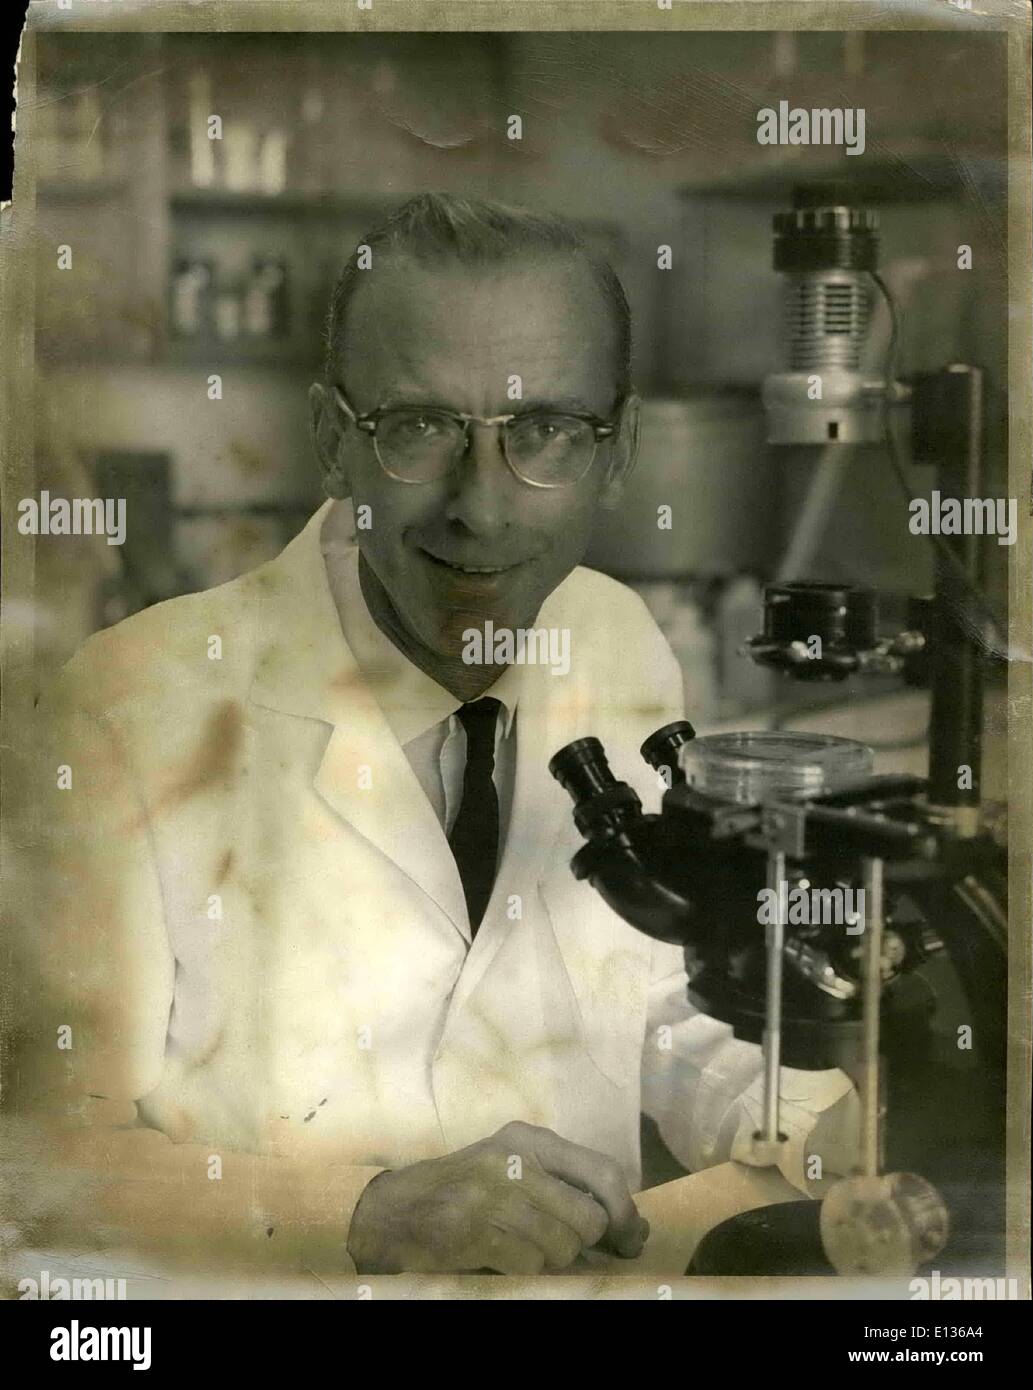 28 févr. 2012 - Chercheur rattaché au Salk Institute (La Jolla, Californie) : Le Dr Robert W. Holley, 1968 la lauréate du Prix Nobel de physiologie et médecine, est montré à l'œuvre dans son laboratoire de l'Institut Salk. Banque D'Images